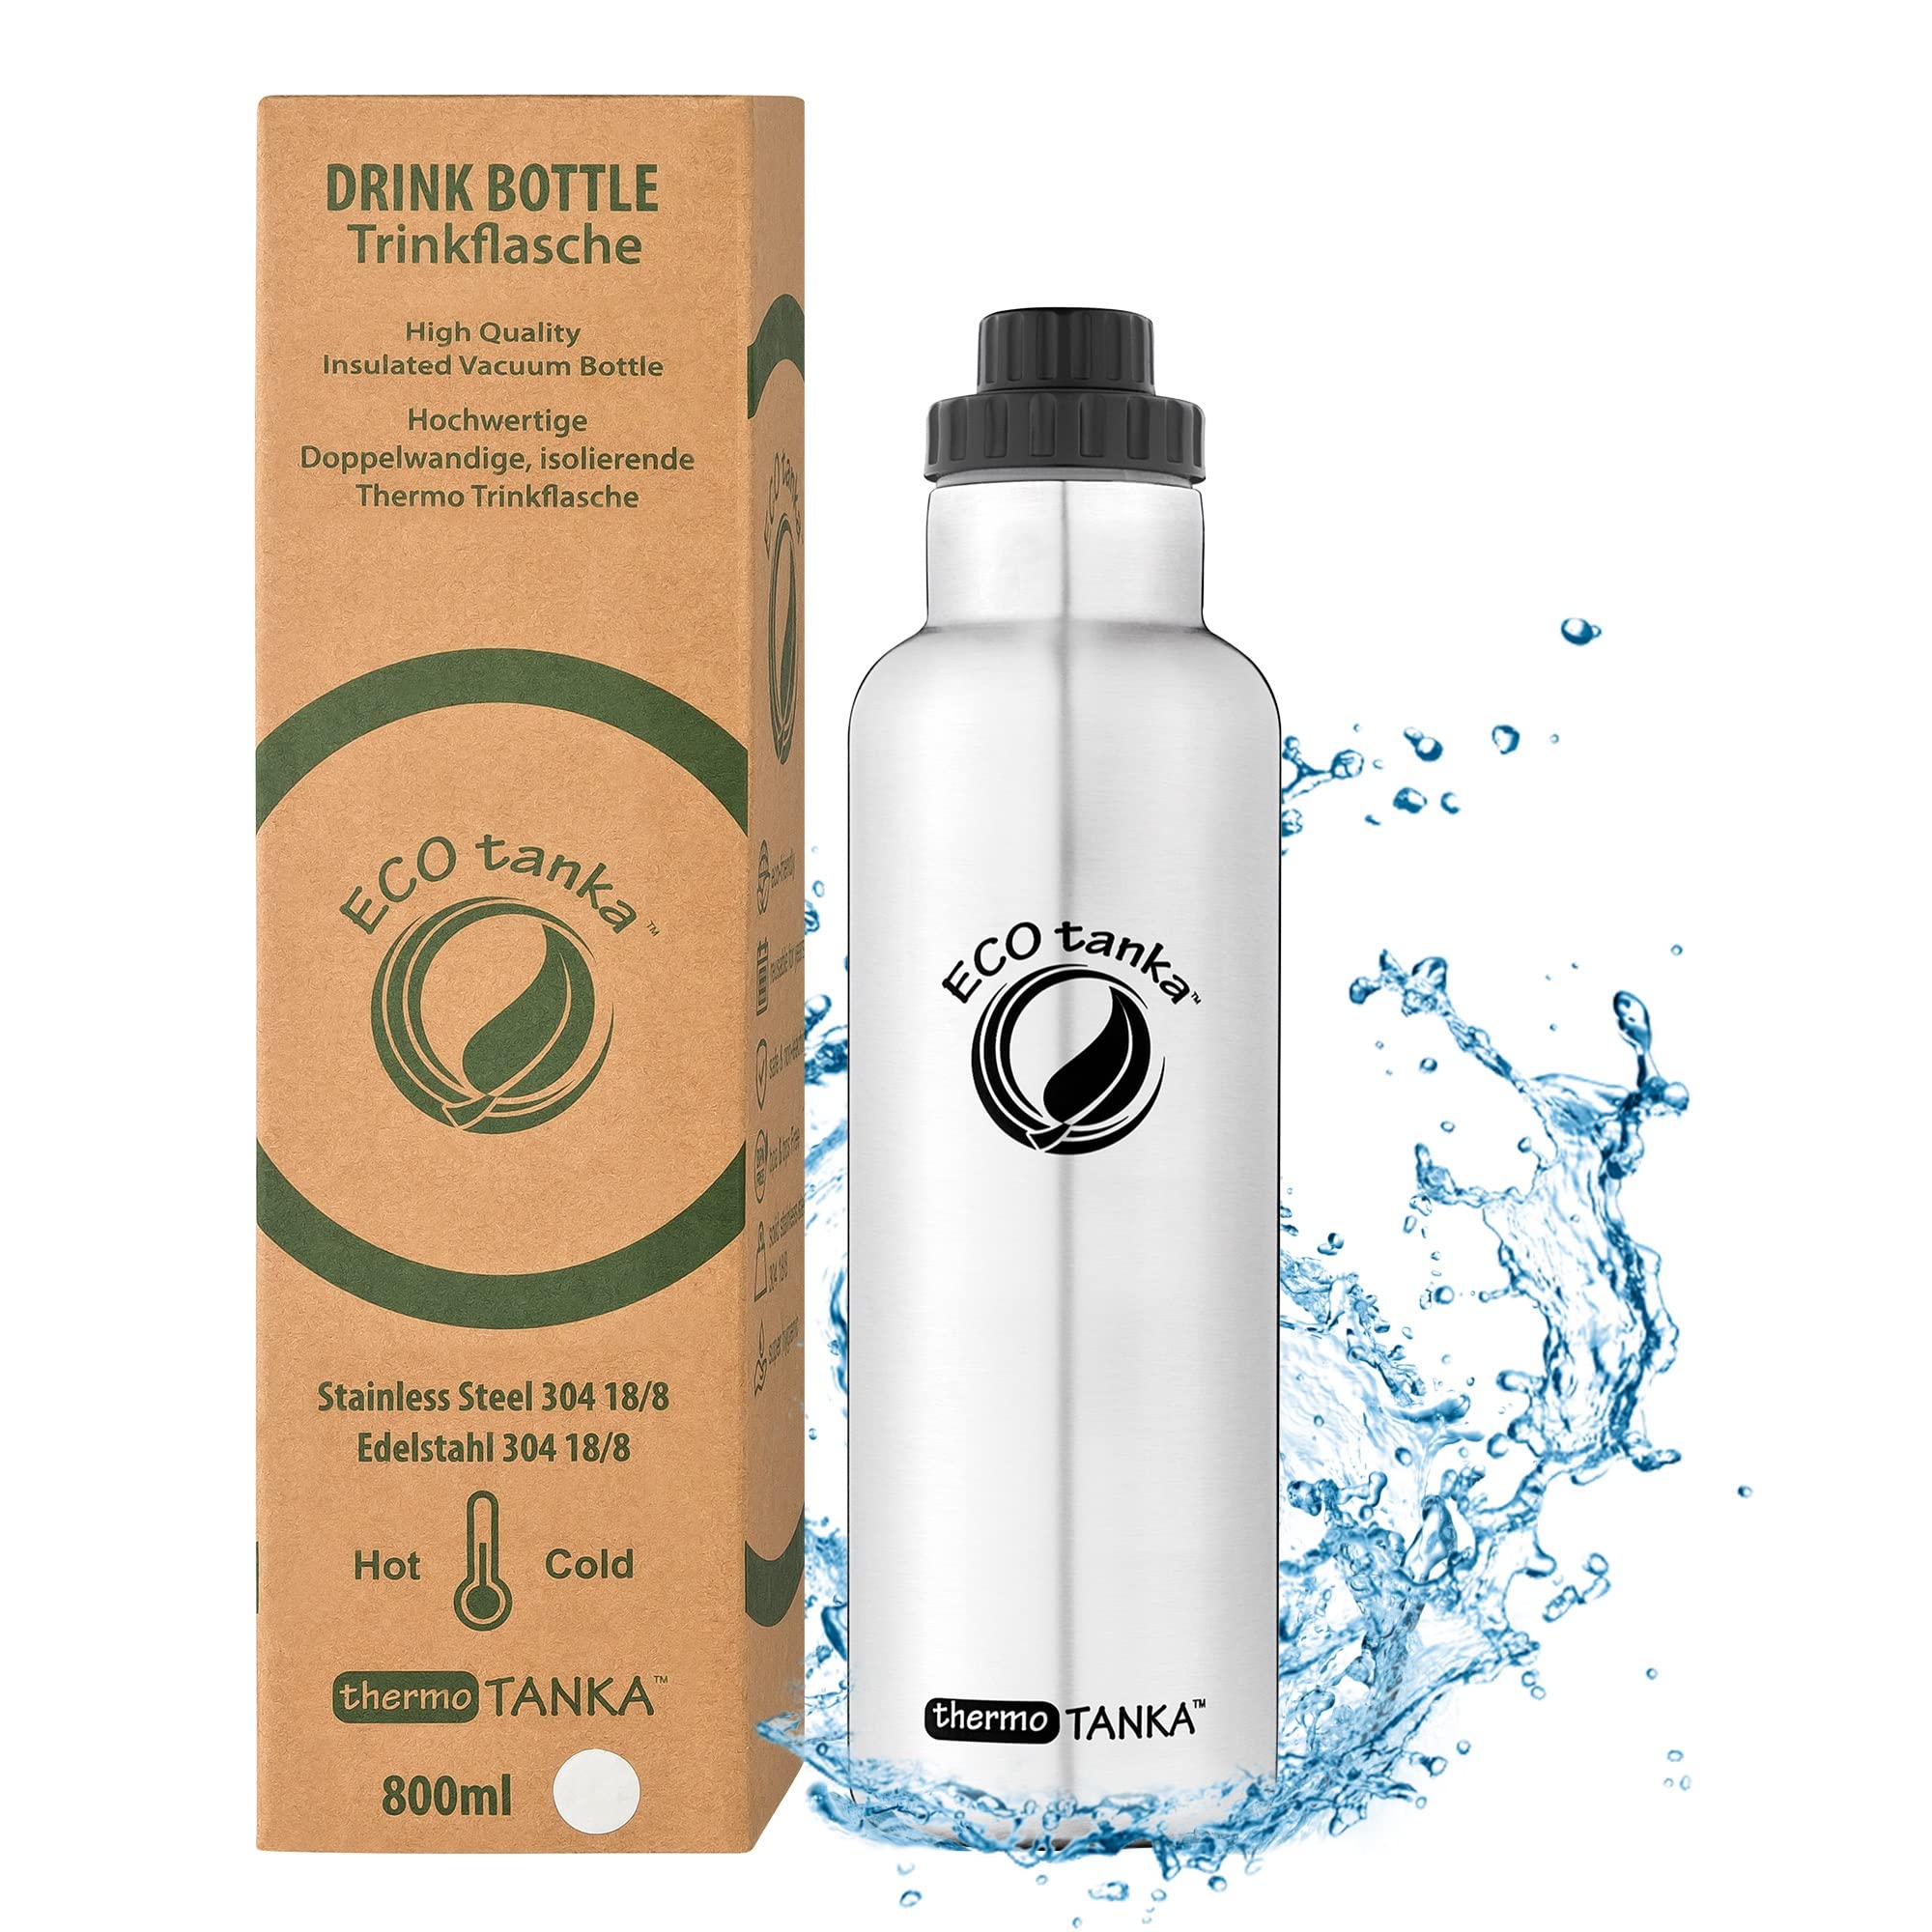 ECOtanka thermoTANKA 800ml (Reduzier Verschluss) Edelstahl-Thermosflasche, BPA-frei, ökologisch, nachhaltig, robust, sehr leicht